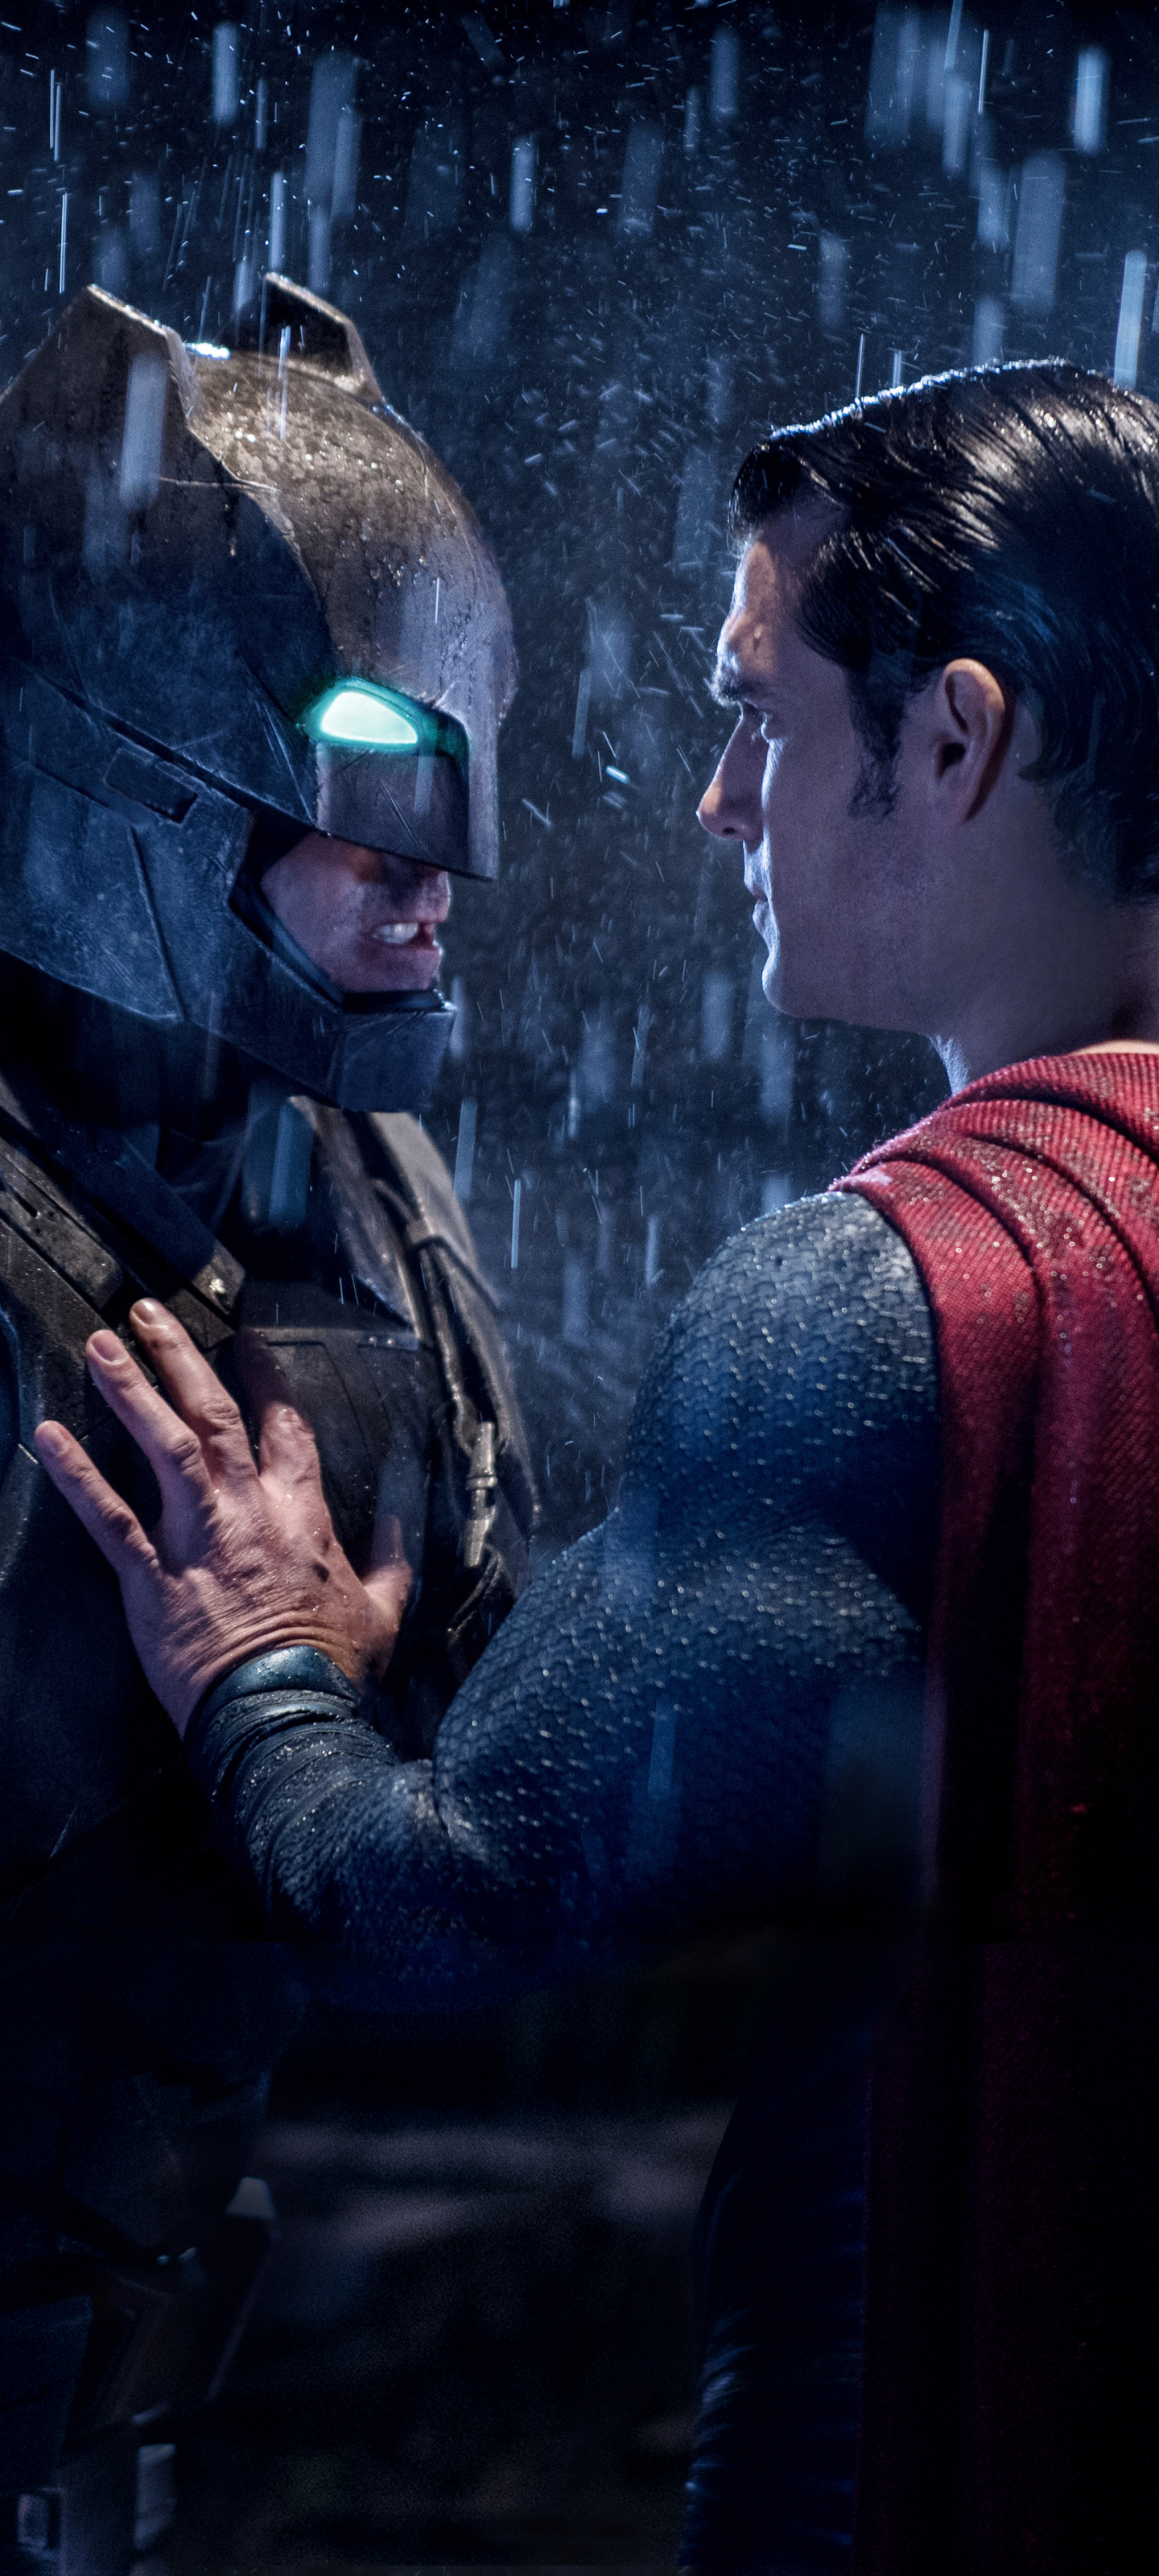 Descarga gratuita de fondo de pantalla para móvil de Superhombre, Películas, Hombre Murciélago, Batman V Superman: El Amanecer De La Justicia.